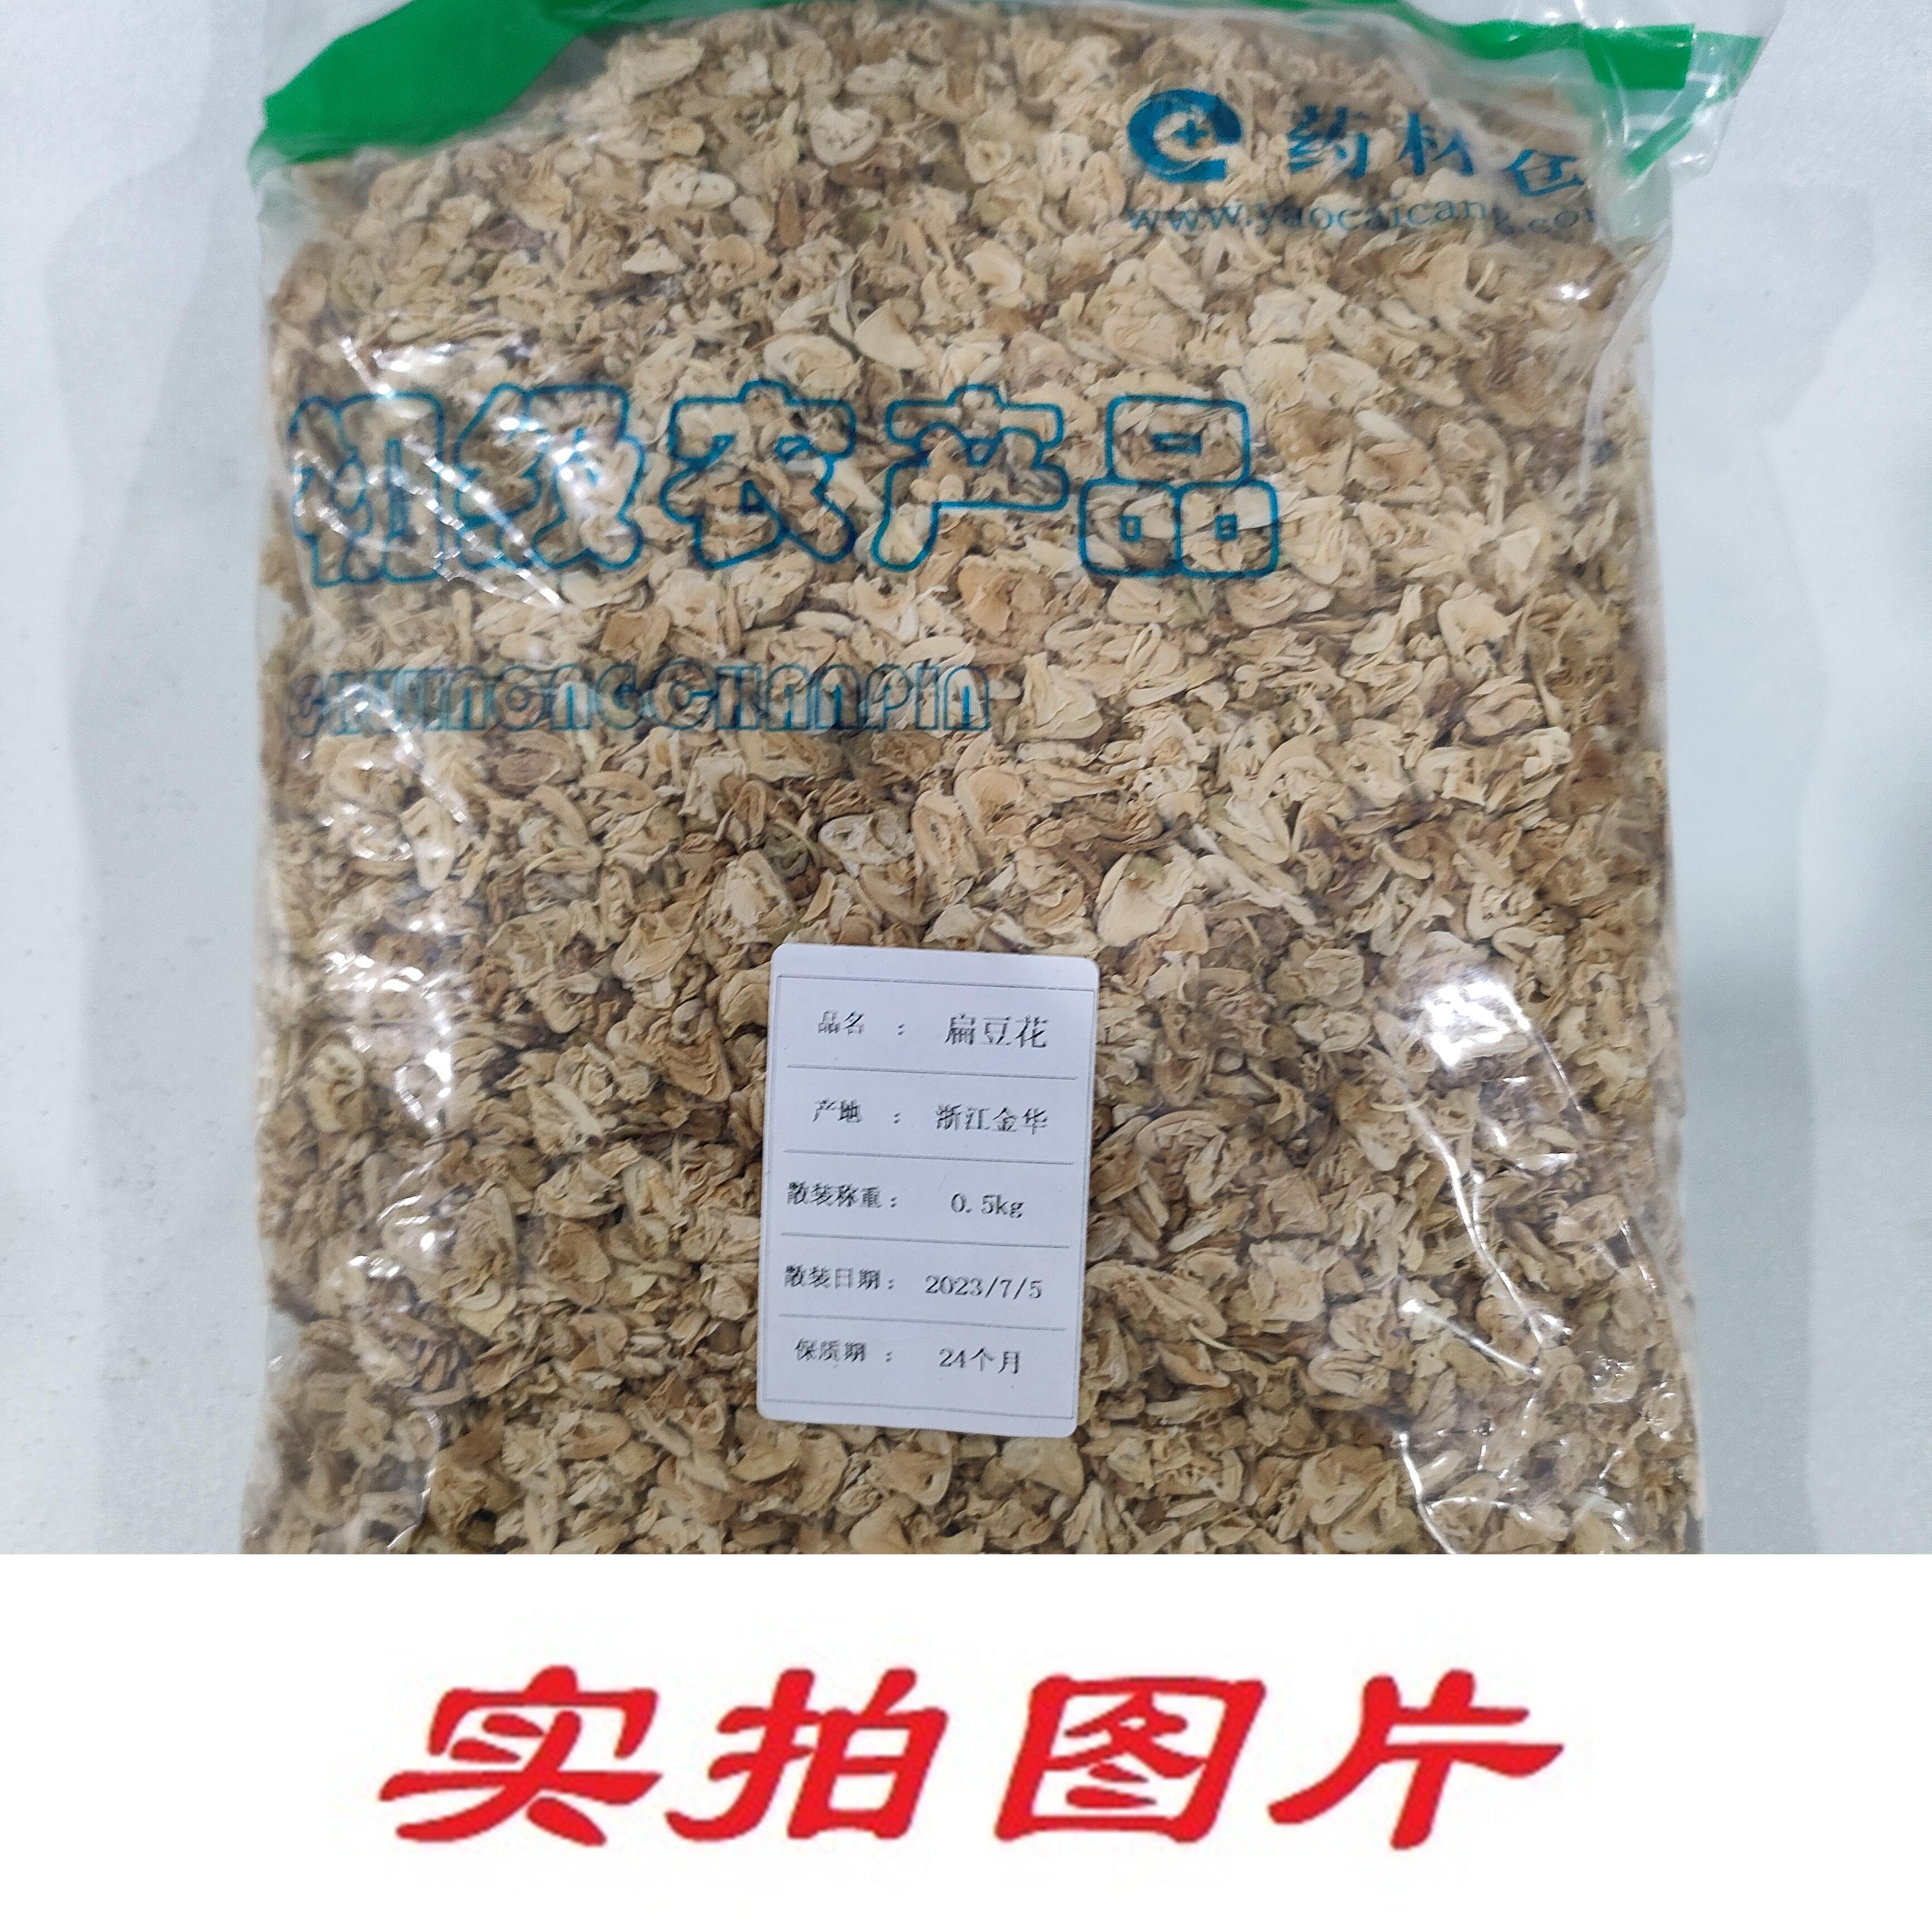 【】扁豆花0.5kg-农副产品